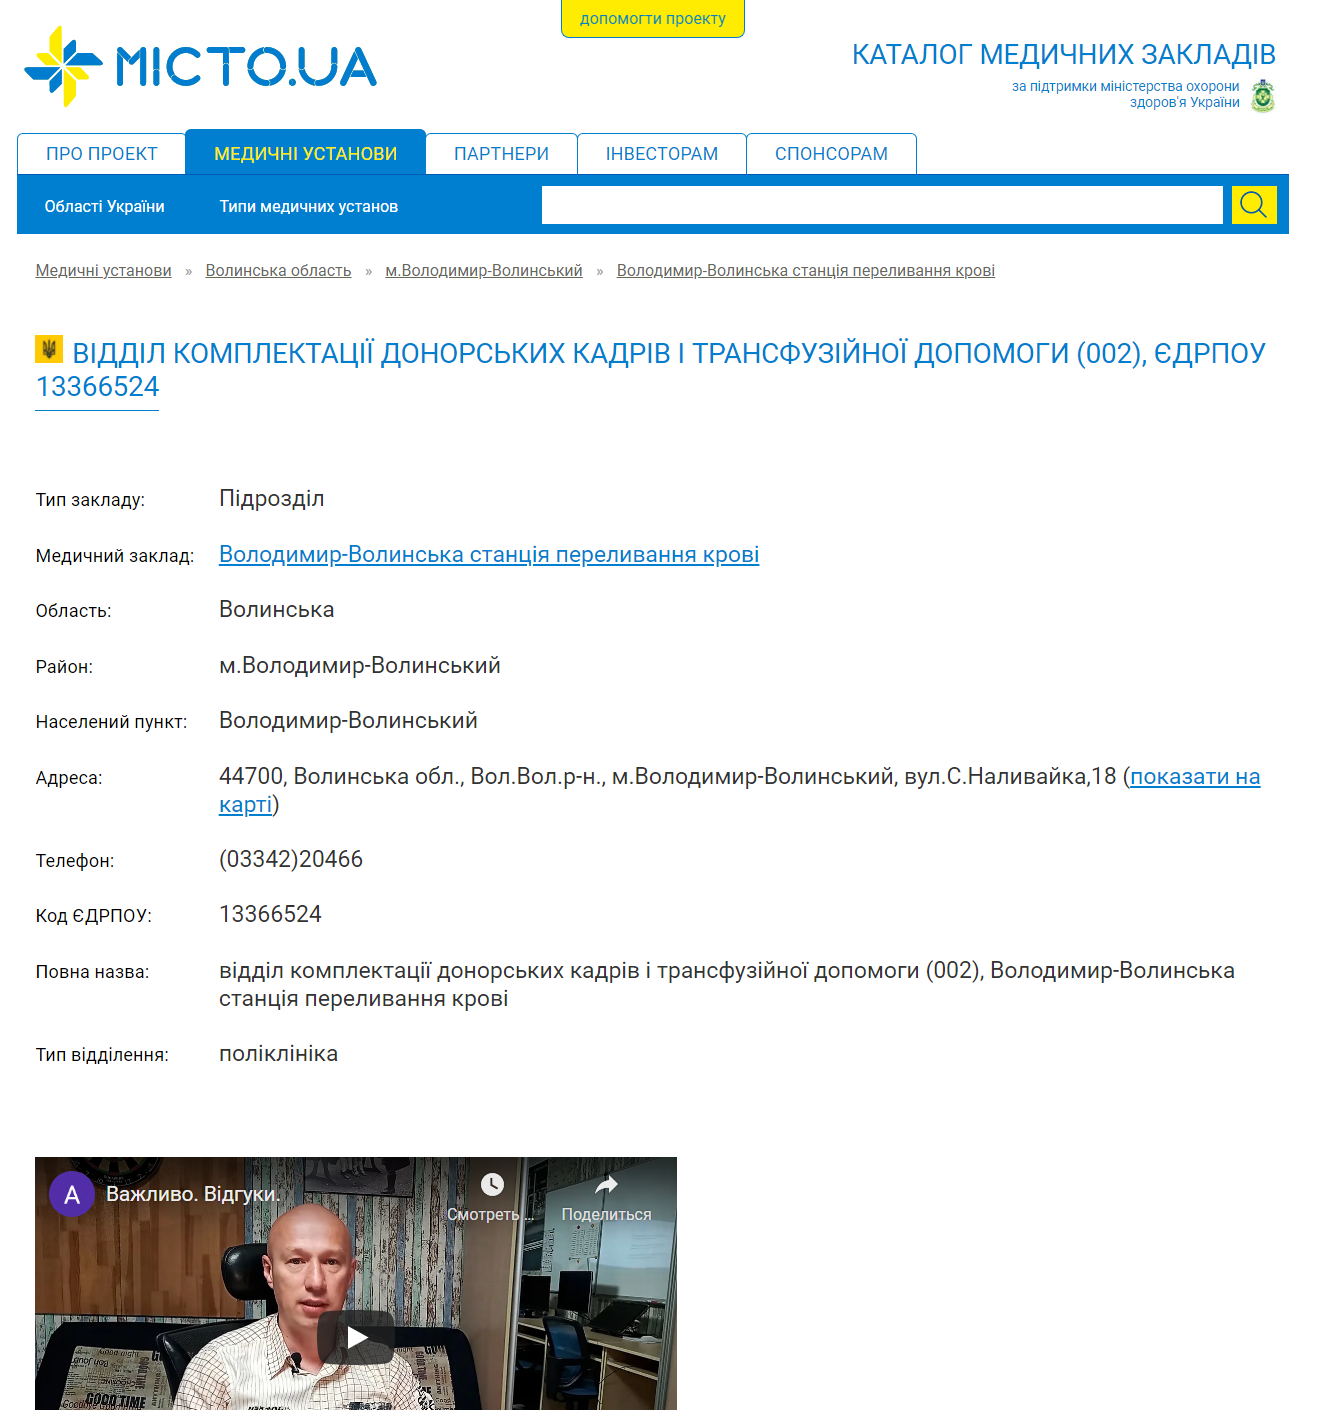 https://micto.ua/volodymyr-volynska-stantsiia-perelyvannia-krovi-i156045/viddil-komplektatsii-donorskykh-kadriv-i-transfuziinoi-dopomohy-s3889/